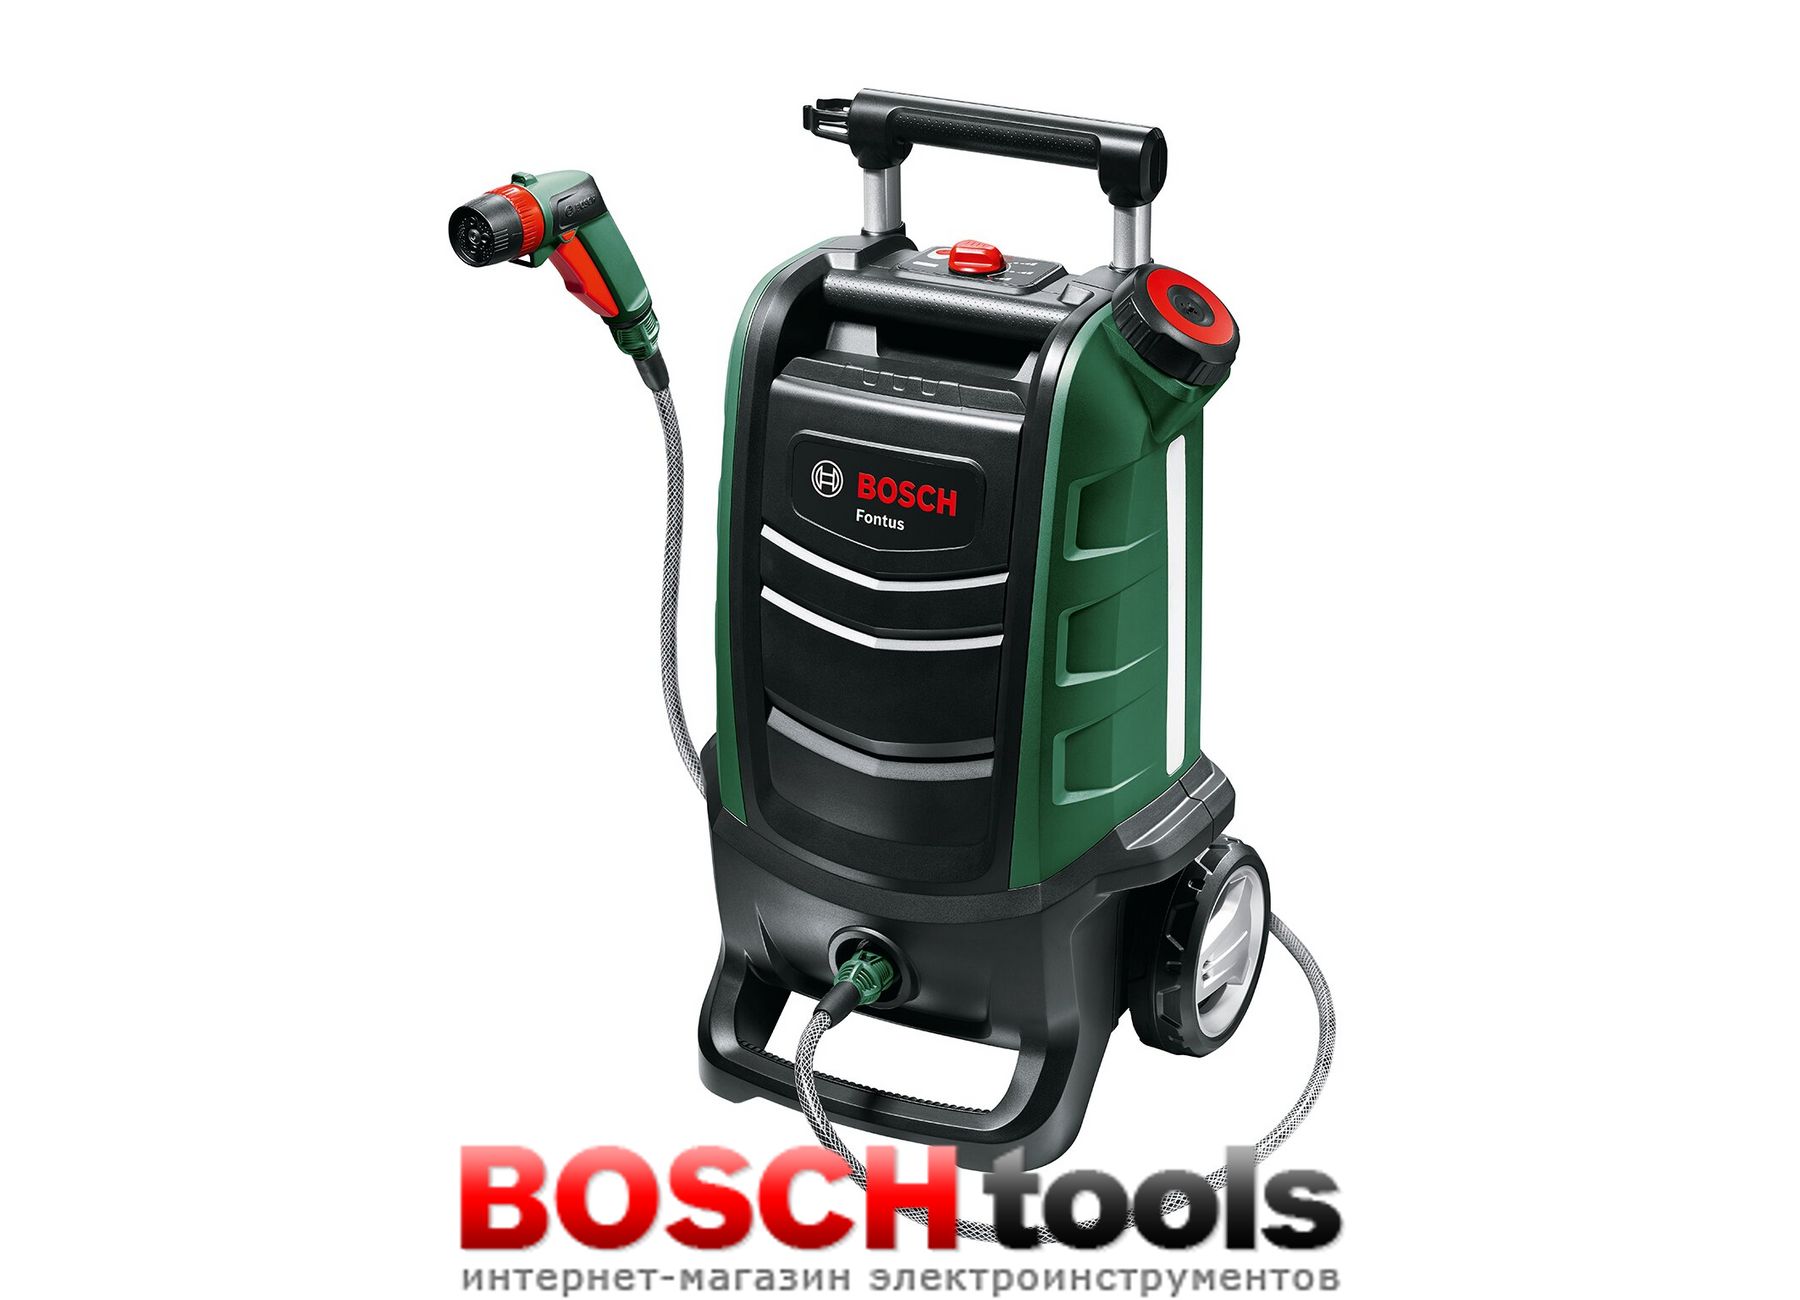 Мойка бош купить. Bosch Fontus (06008b6001) без акк. И З.У. Аккумуляторная мойка высокого давления Bosch. Аккумуляторная мойка высокого давления total tpwli20084. Bosch Fontus Baretool.